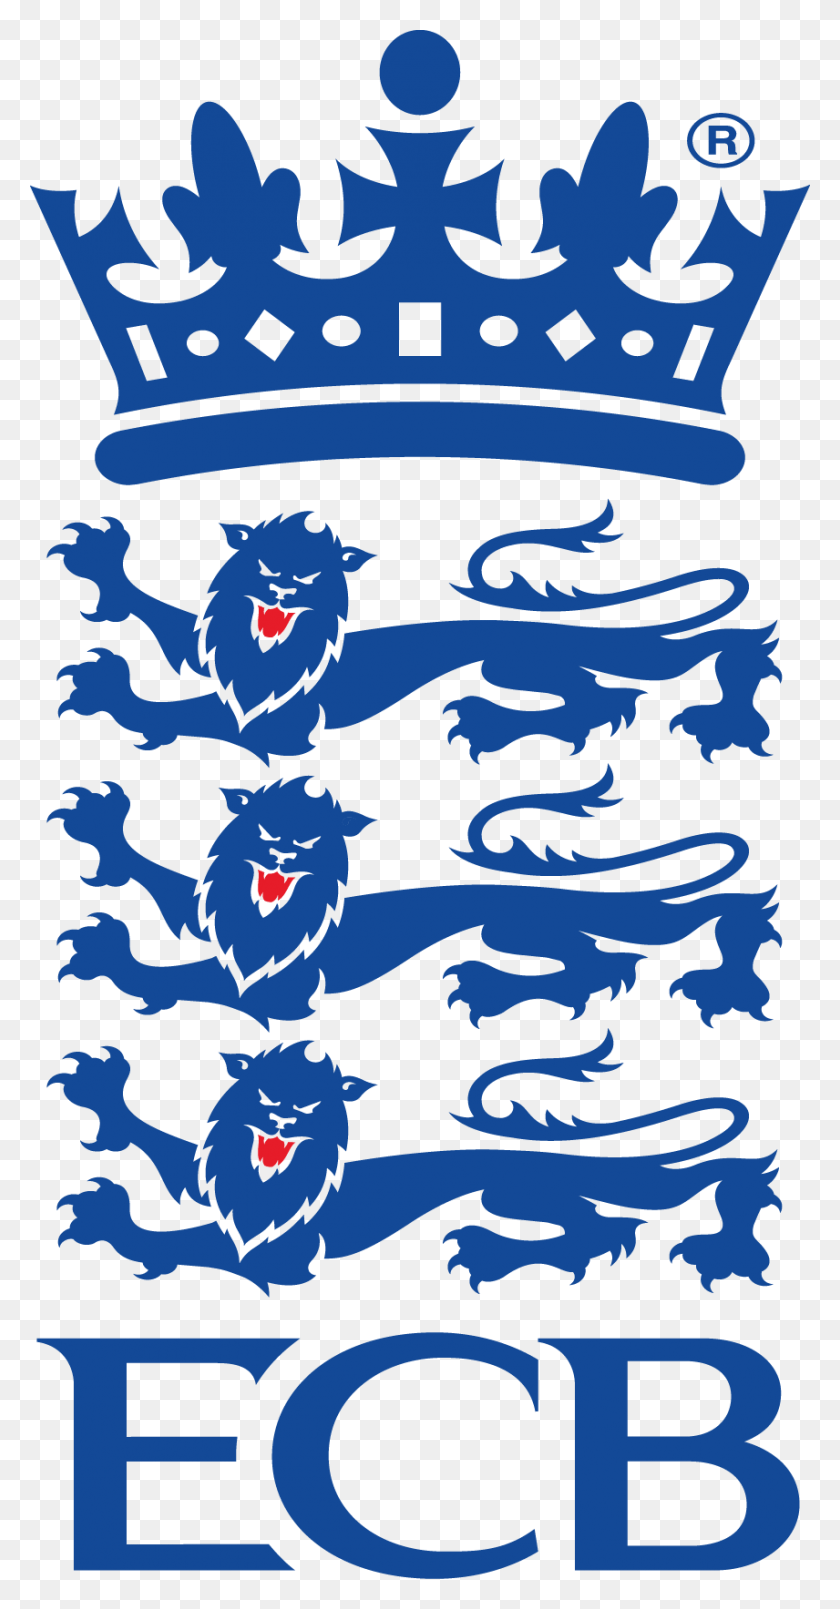 856x1701 Descargar Png Logotipo De La Ecb Tablero De Cricket De Inglaterra Y Gales Tablero De Cricket De Inglaterra Y Gales, Dragón Hd Png